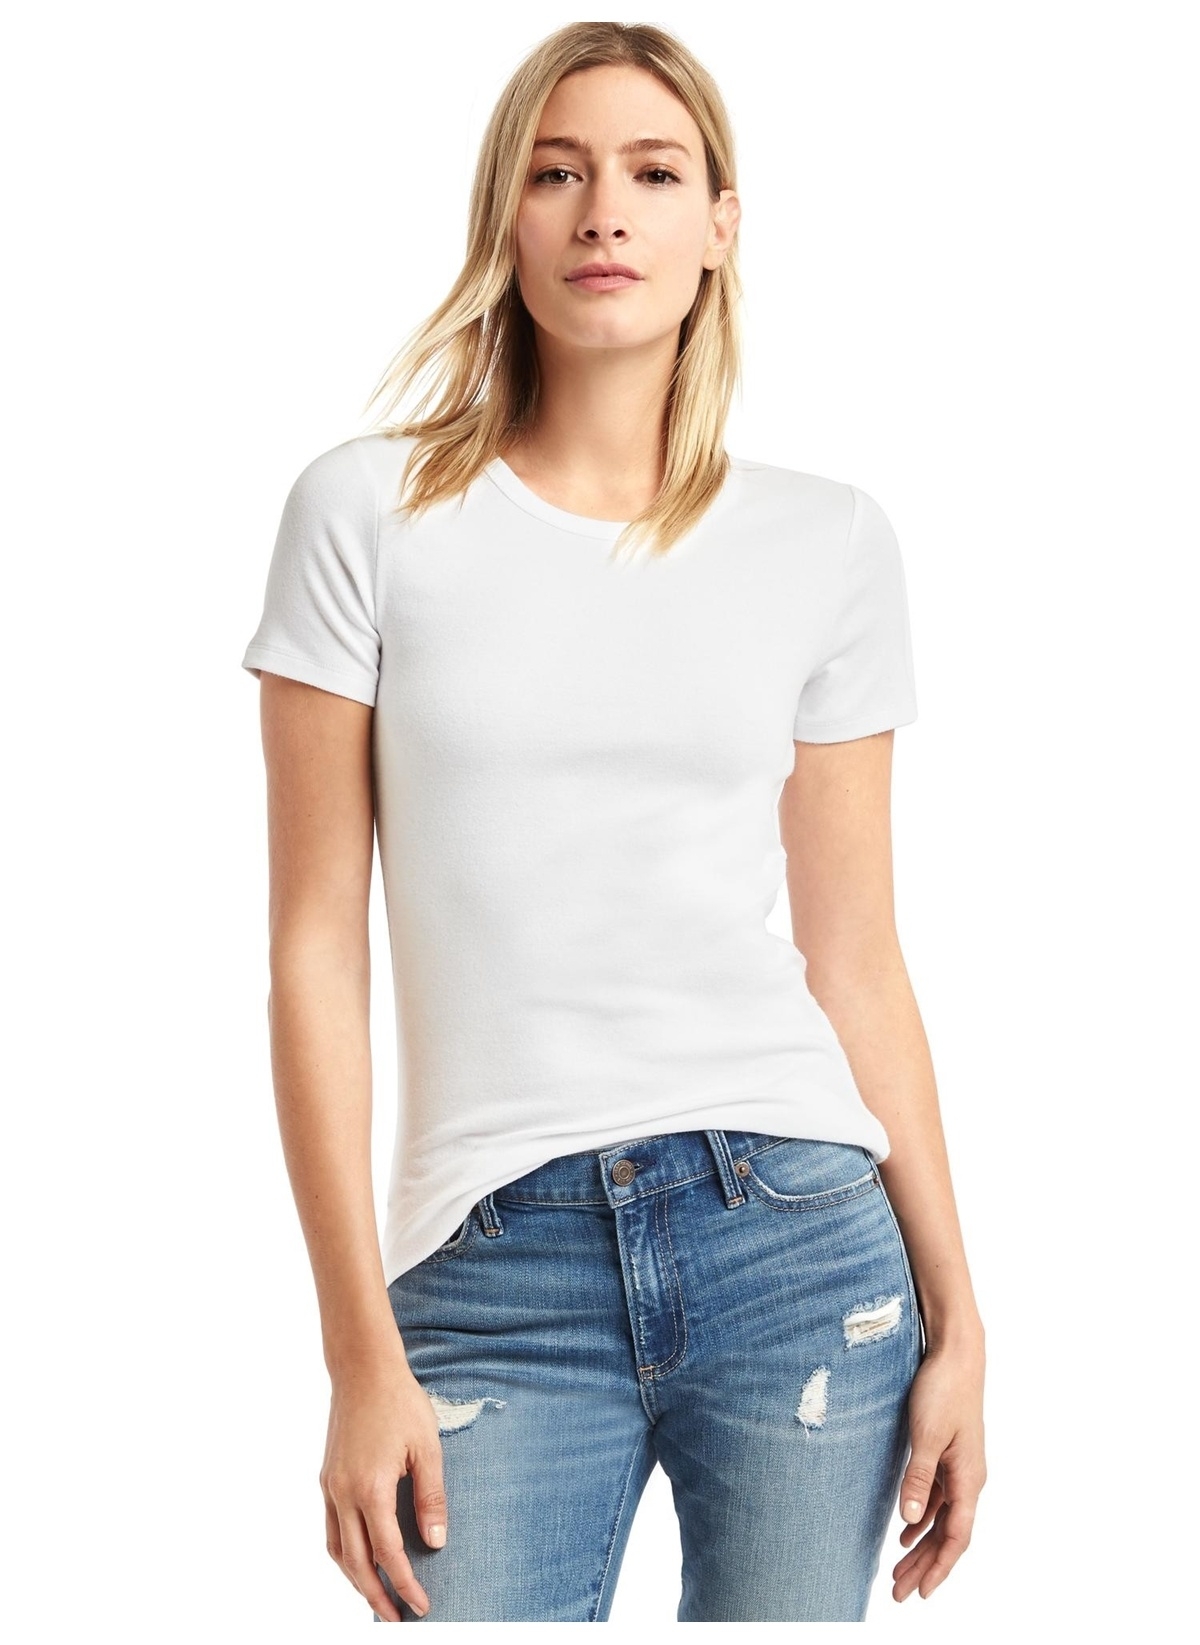 Shirt white girl. Белая футболка. Модель в белой футболке. Футболка женская полубоком. Футболка с открытым горлом.